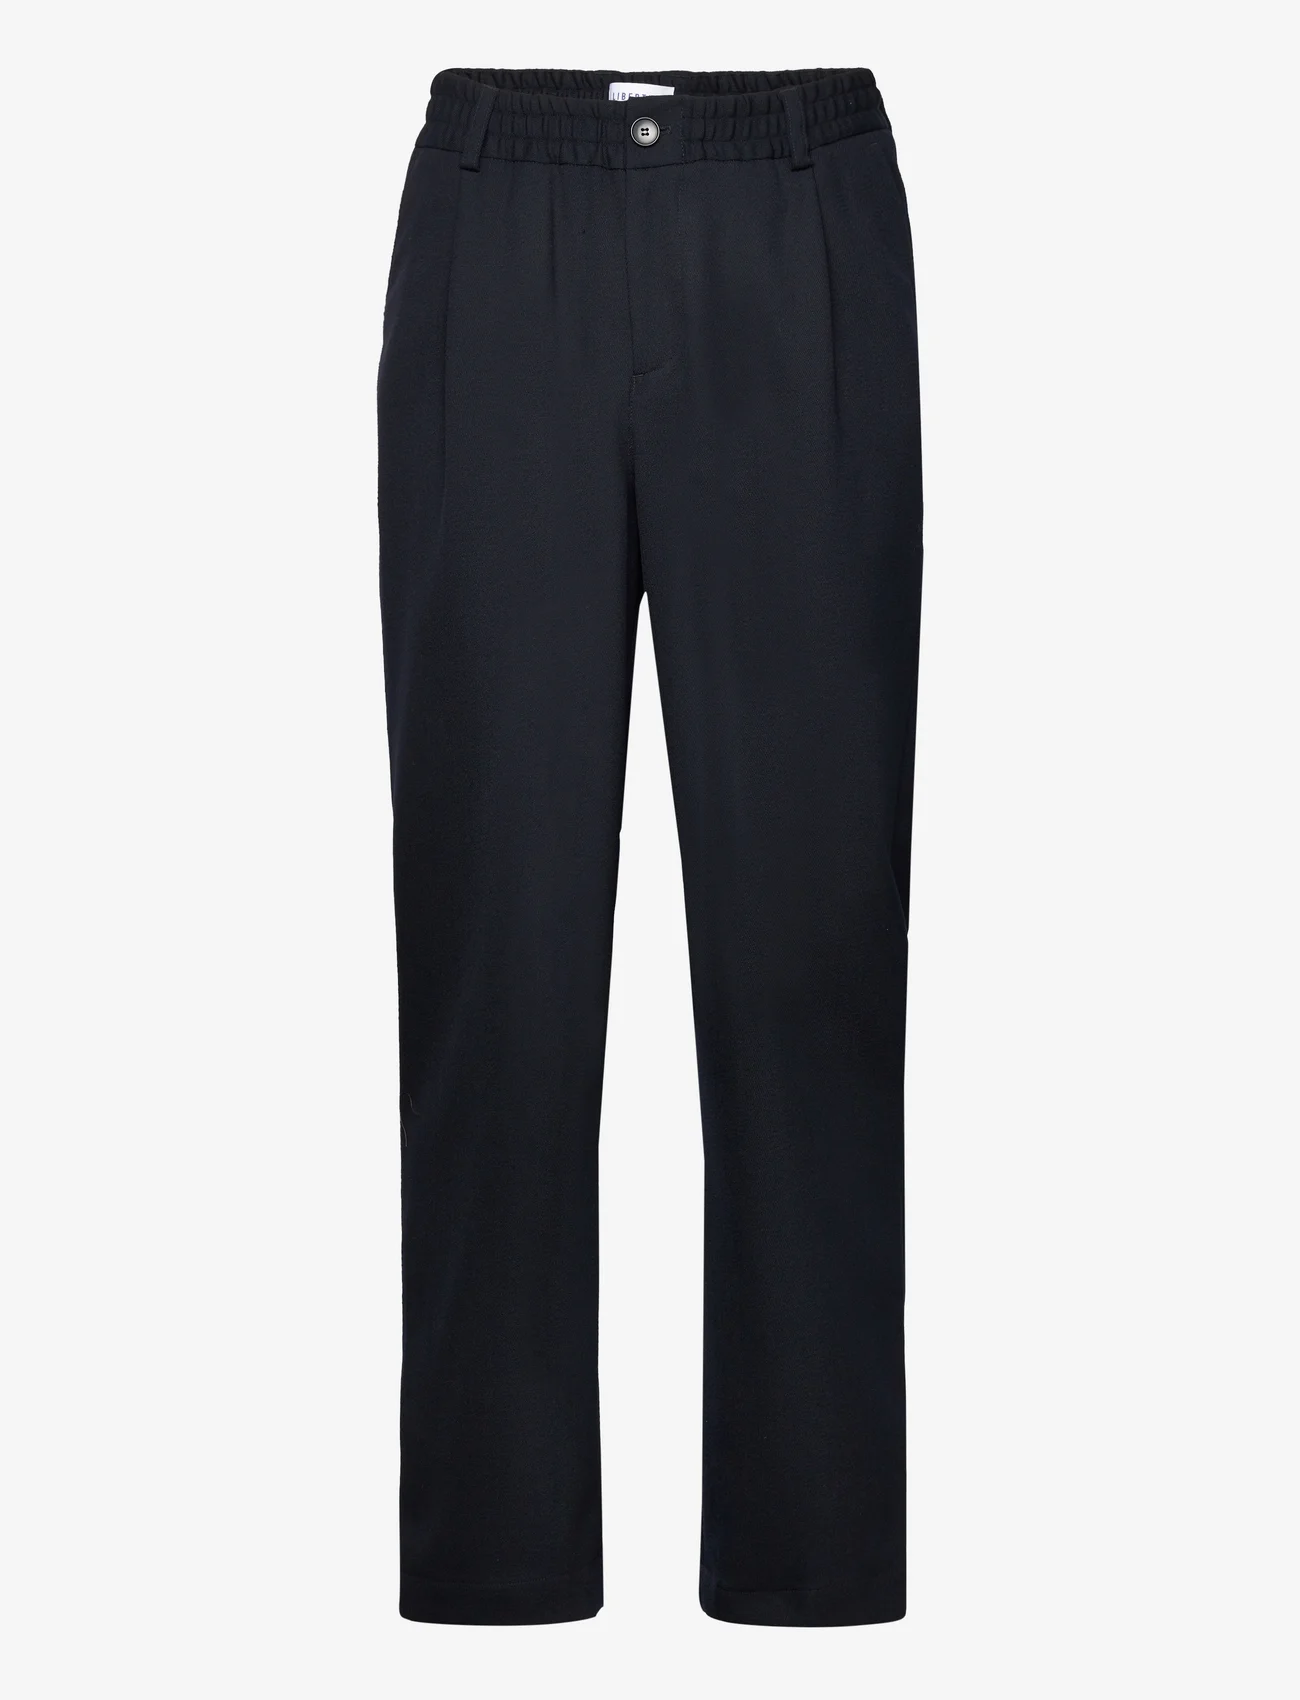 Libertine-Libertine - Agency - formal trousers - dark navy - 0